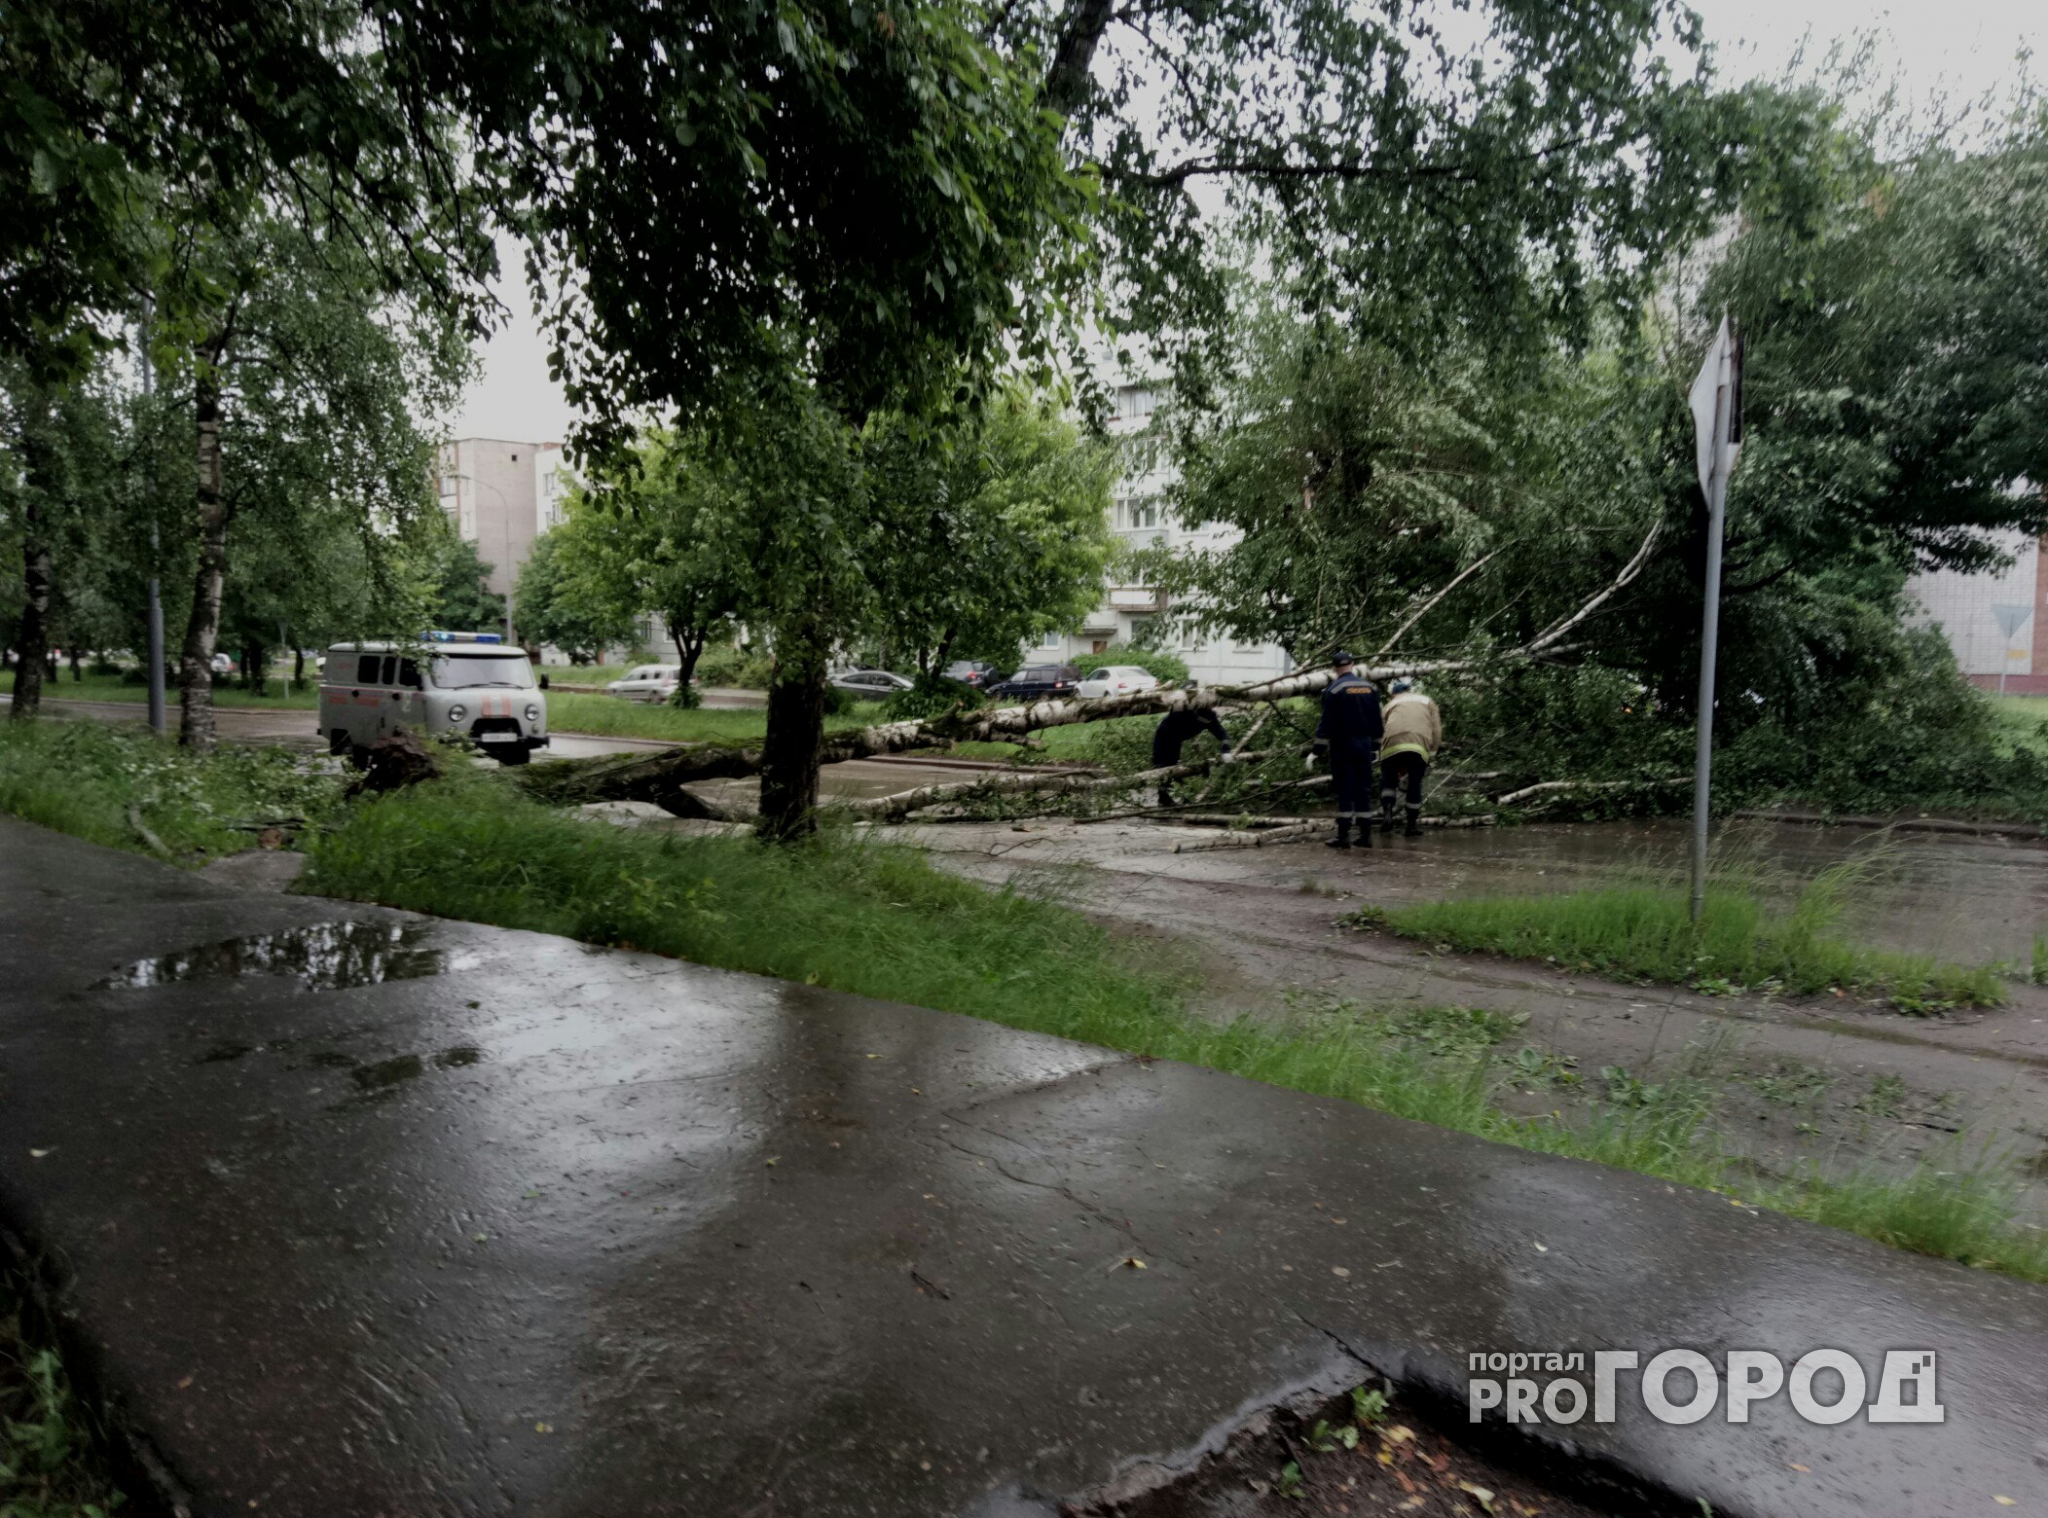 Последствия грозы в Чепецке: дерево заблокировало проезд по Луначарского